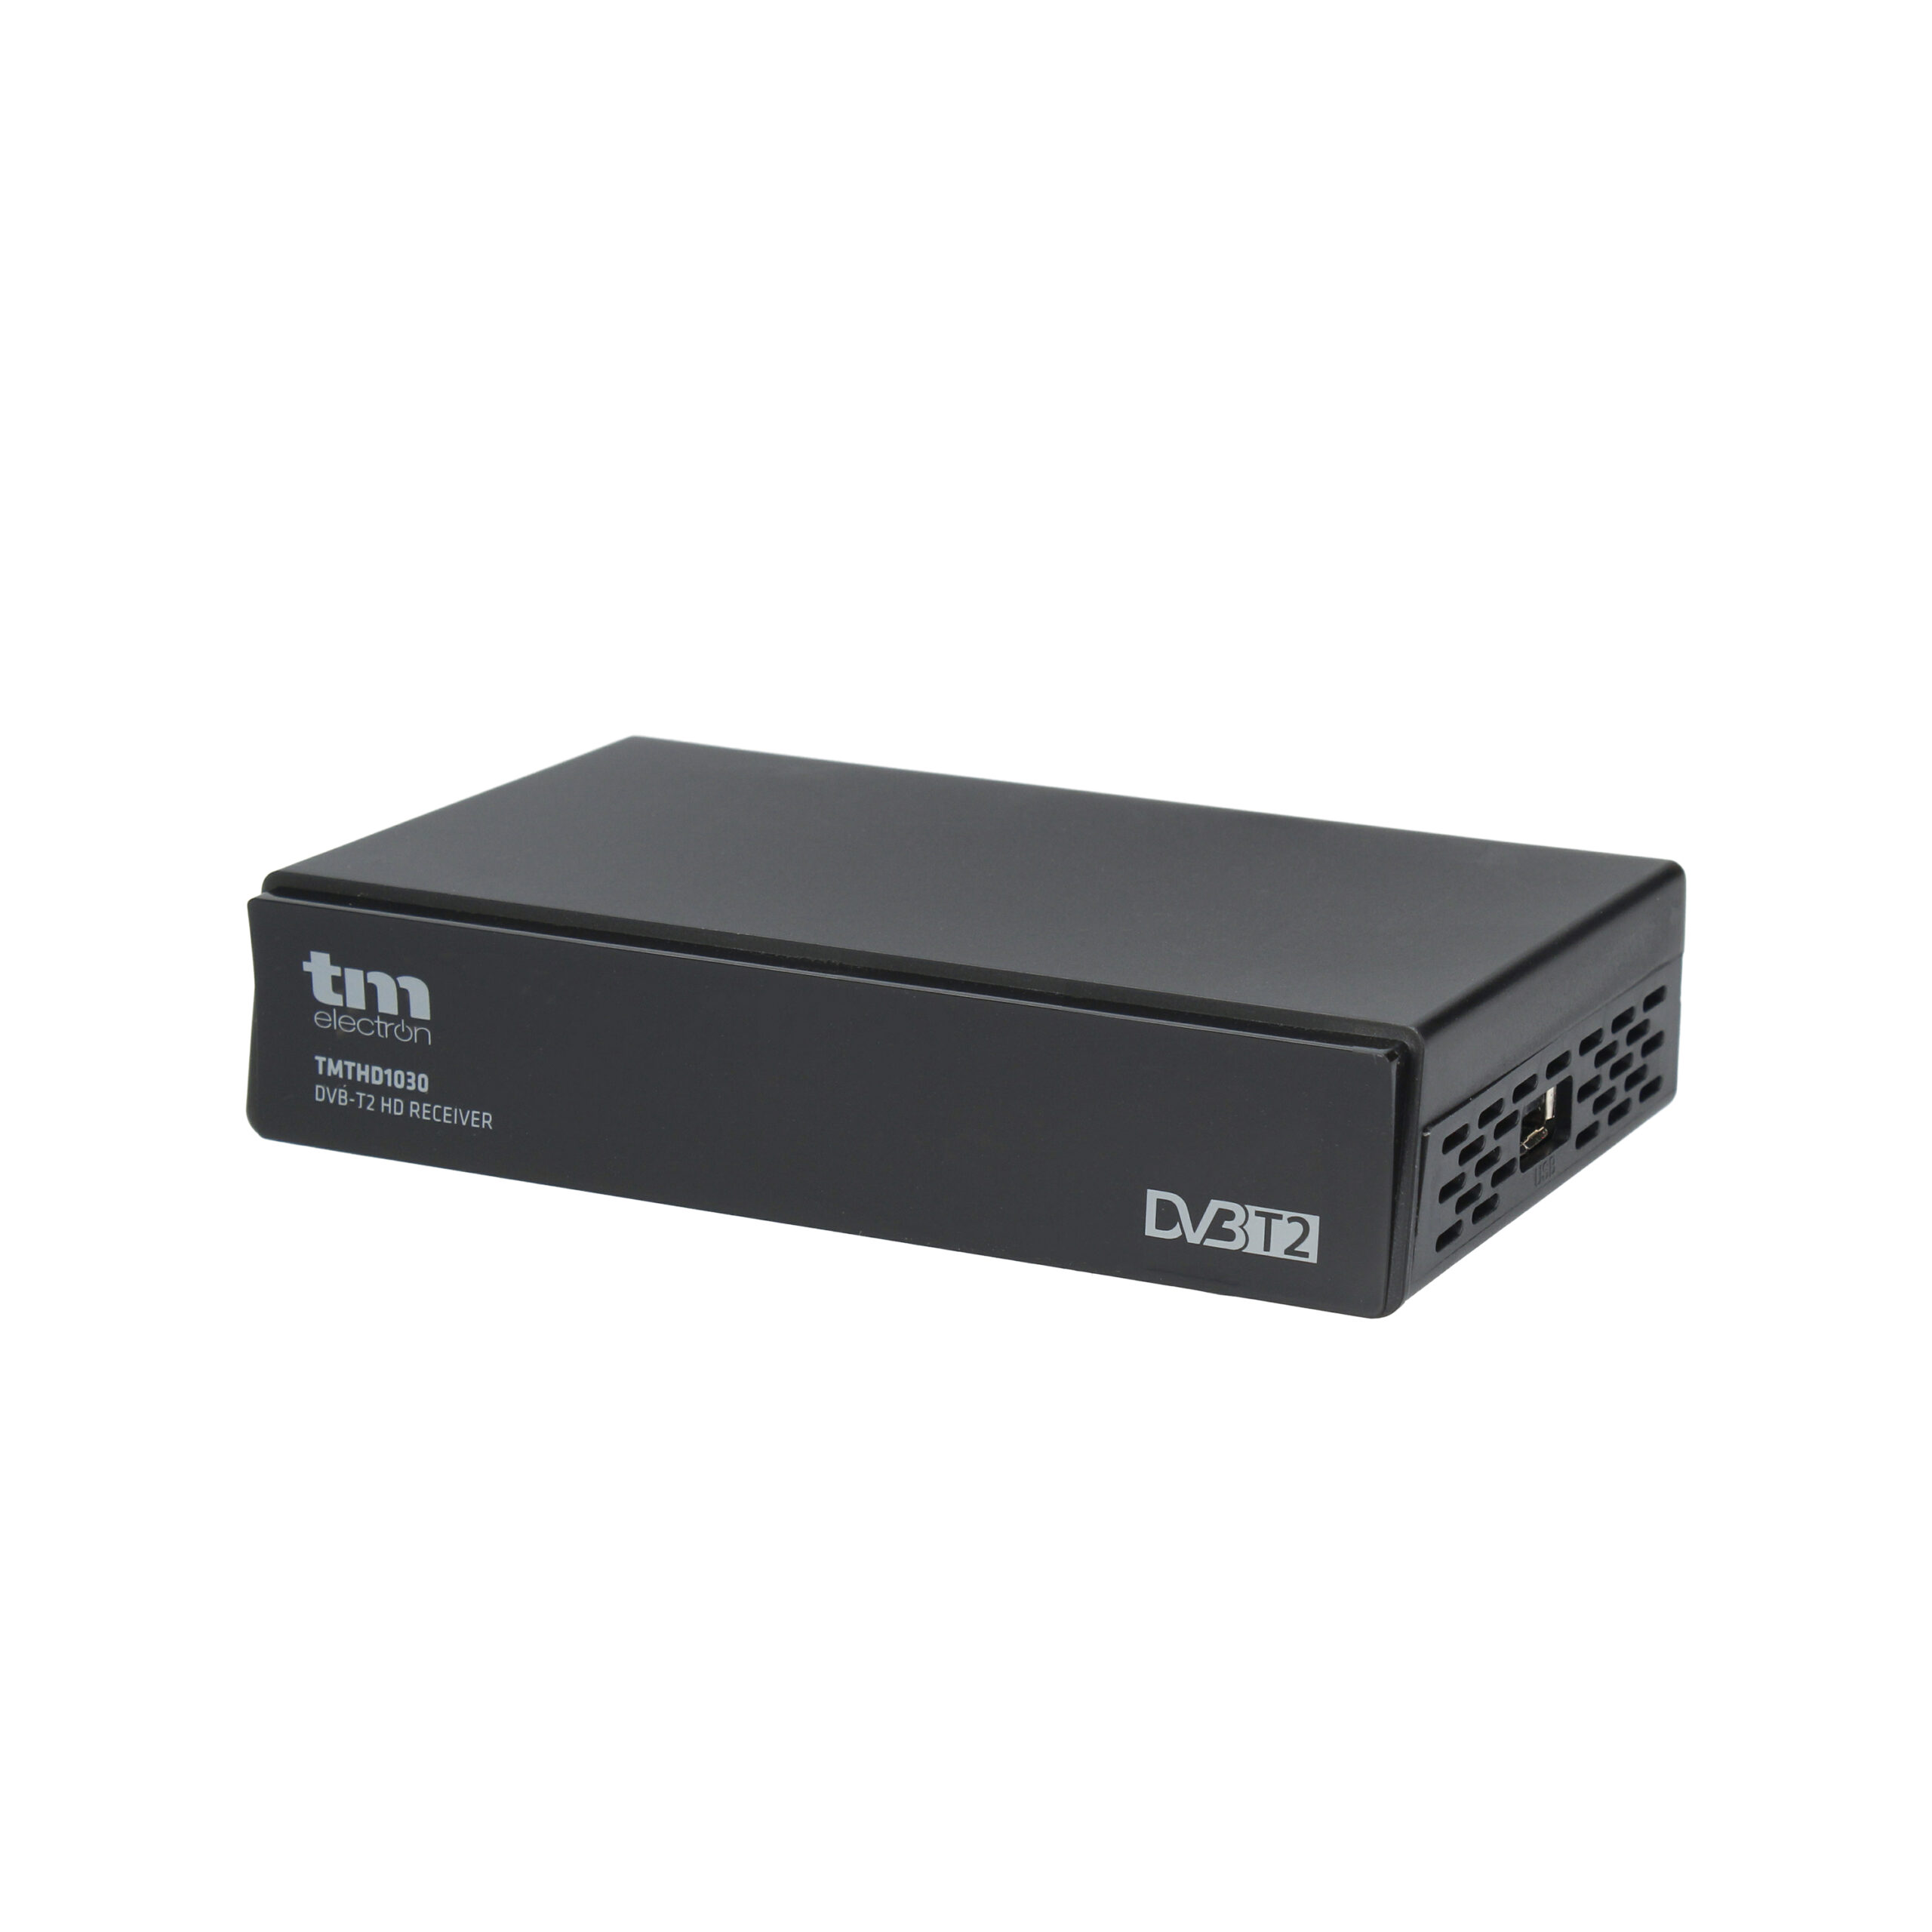 TDT HD Reproductor-Grabador DVB-T2 TDTy+ Sound Biwond